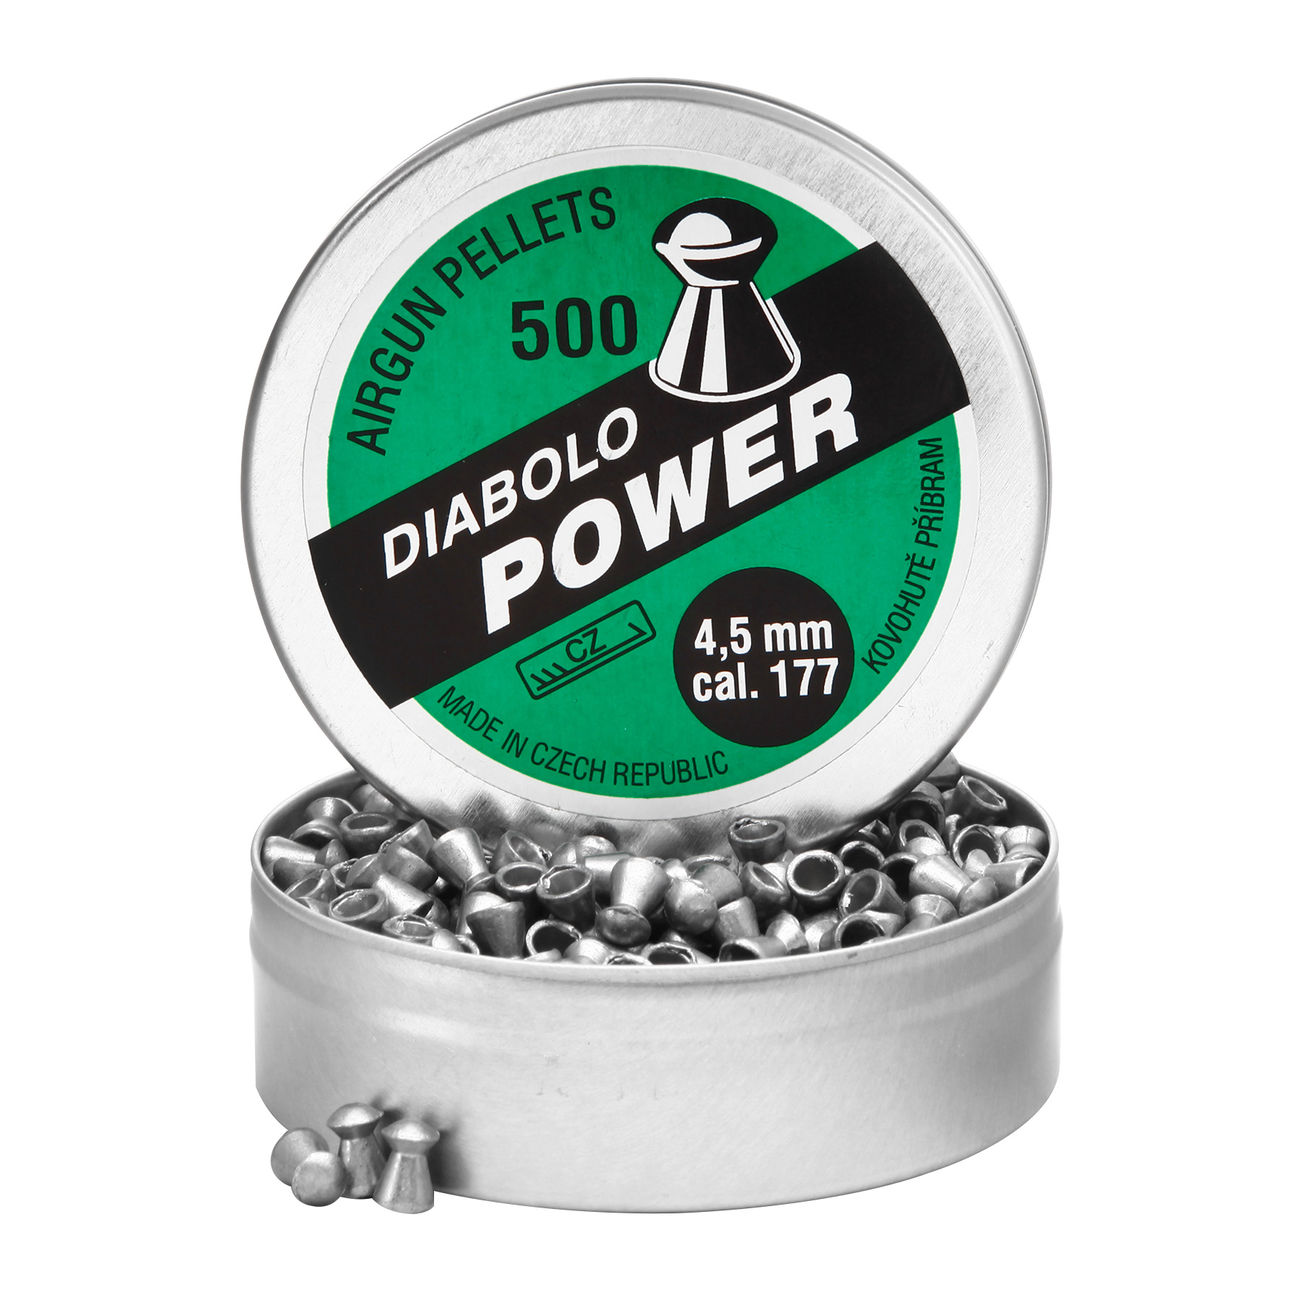 Kovohute Diabolo Power 4,5 mm 500 Stck